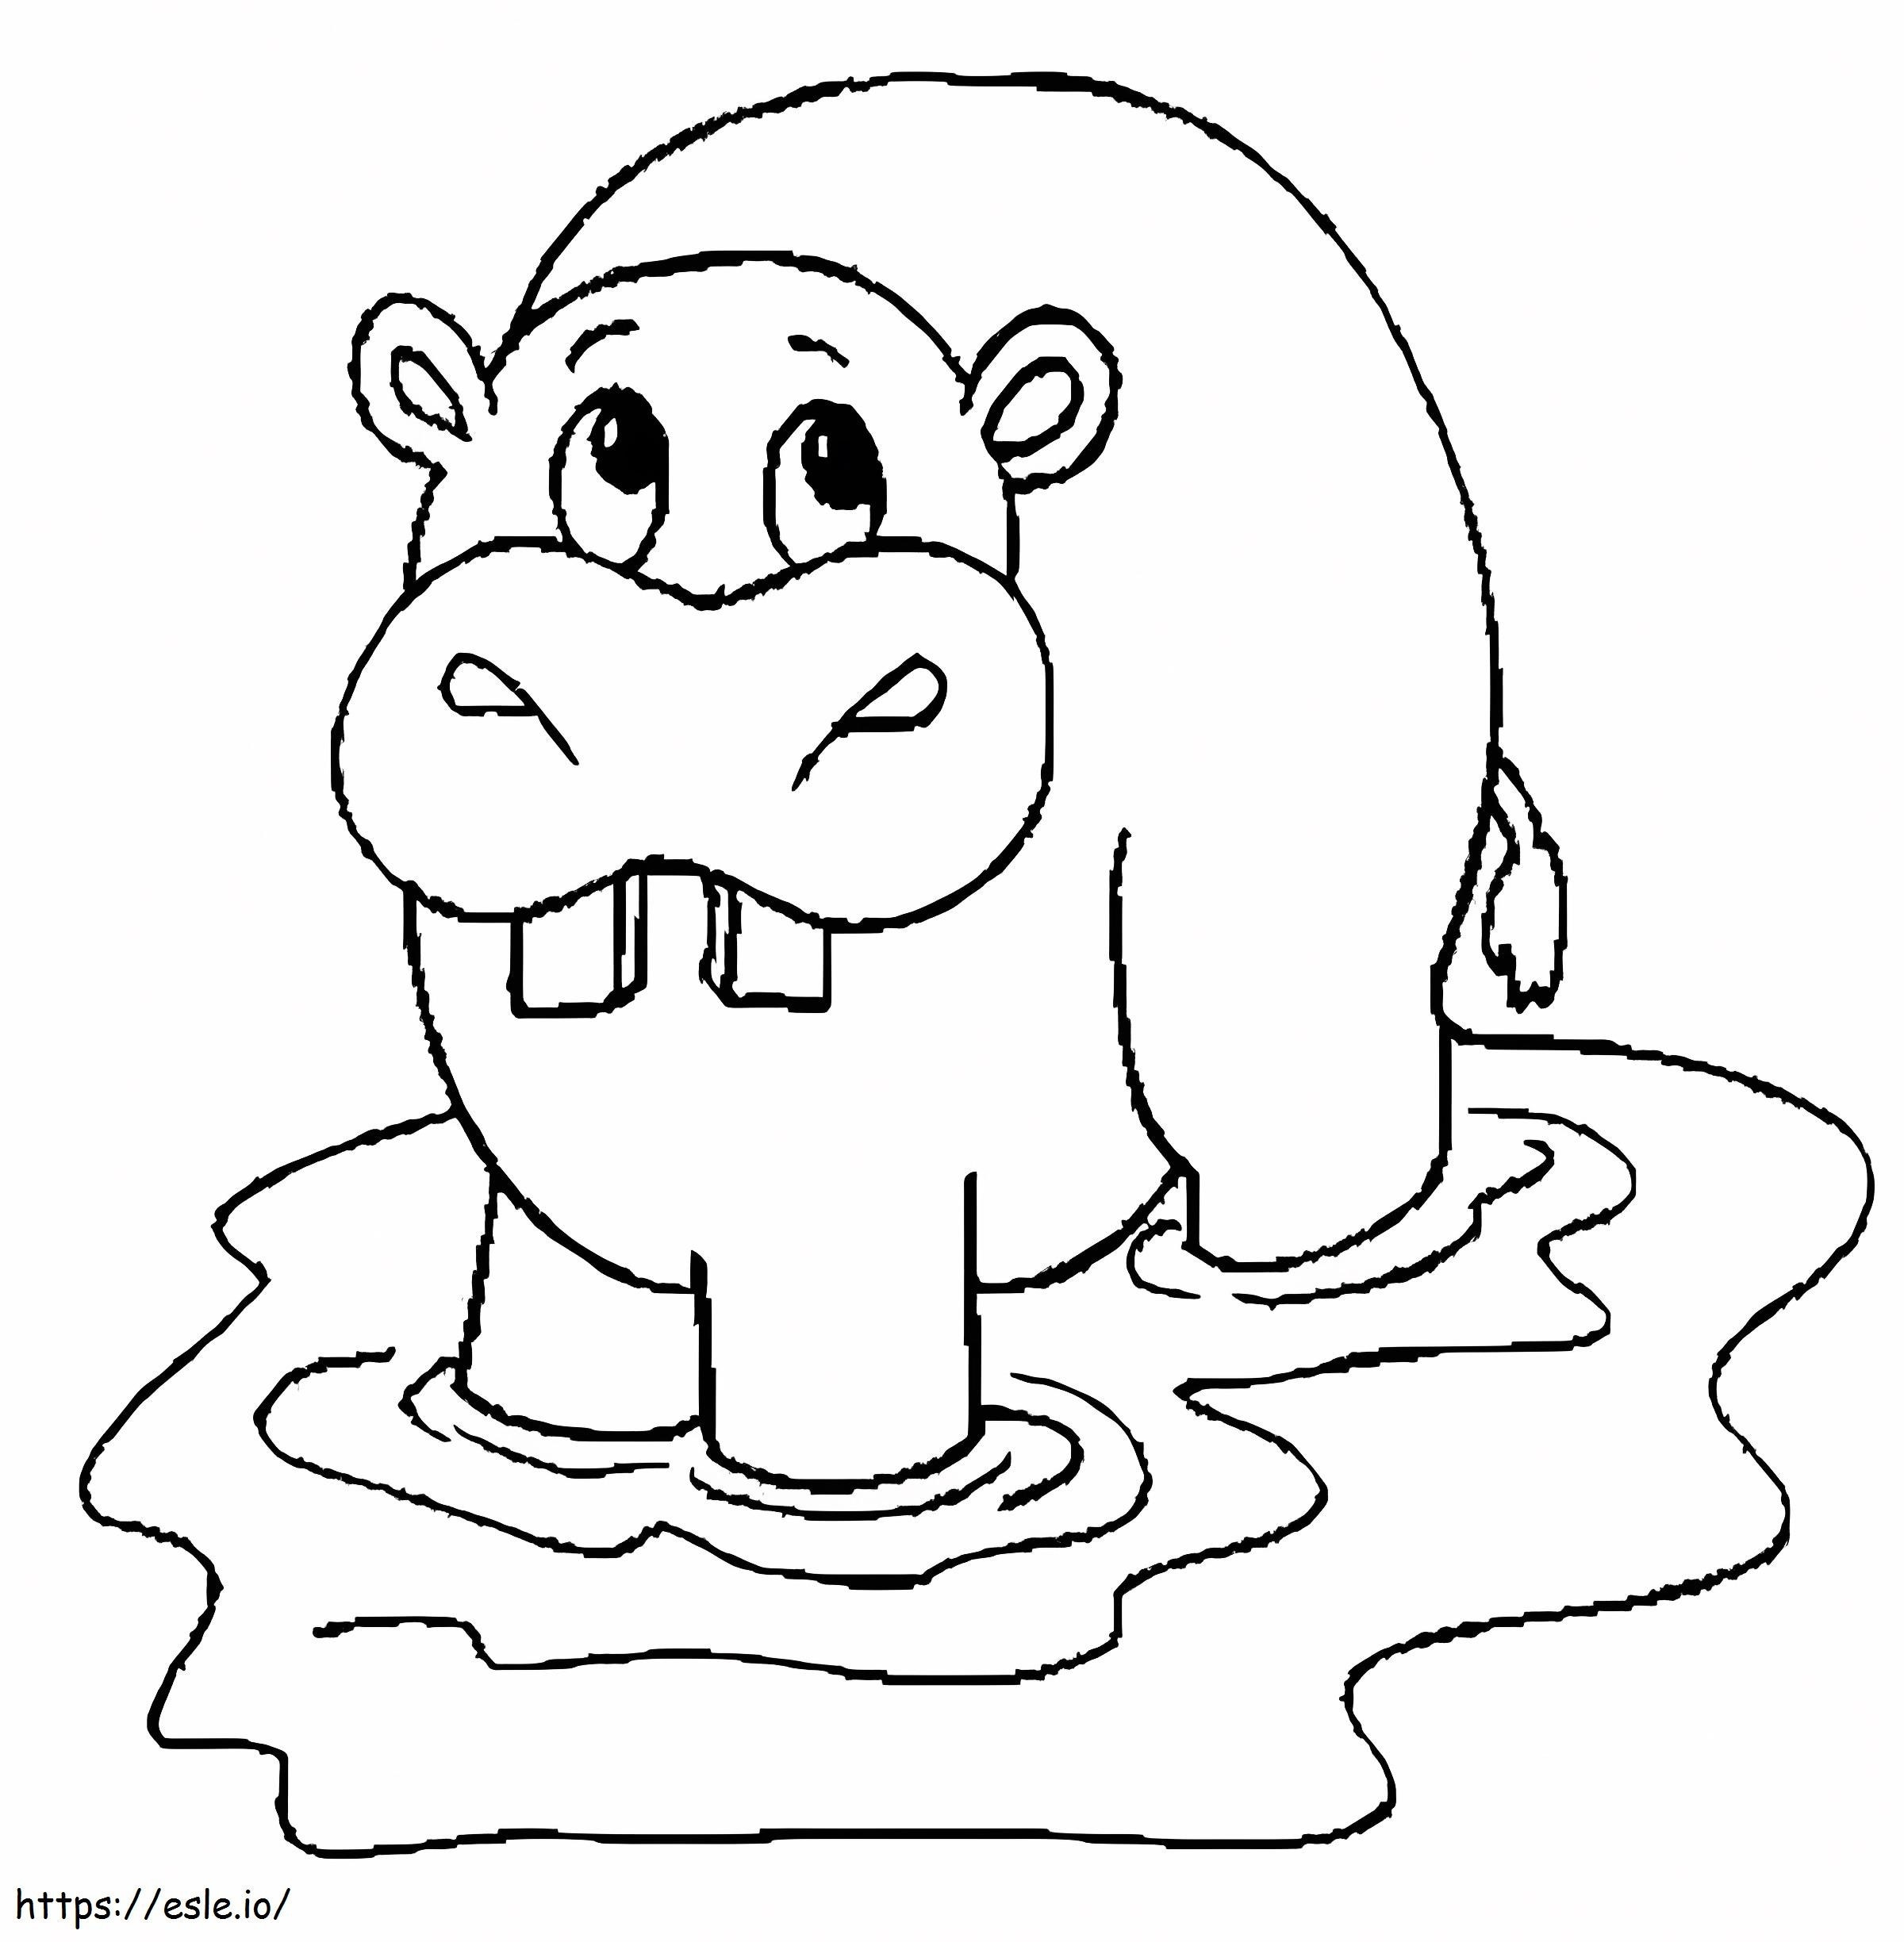 Dibujo de hipopótamo para colorear